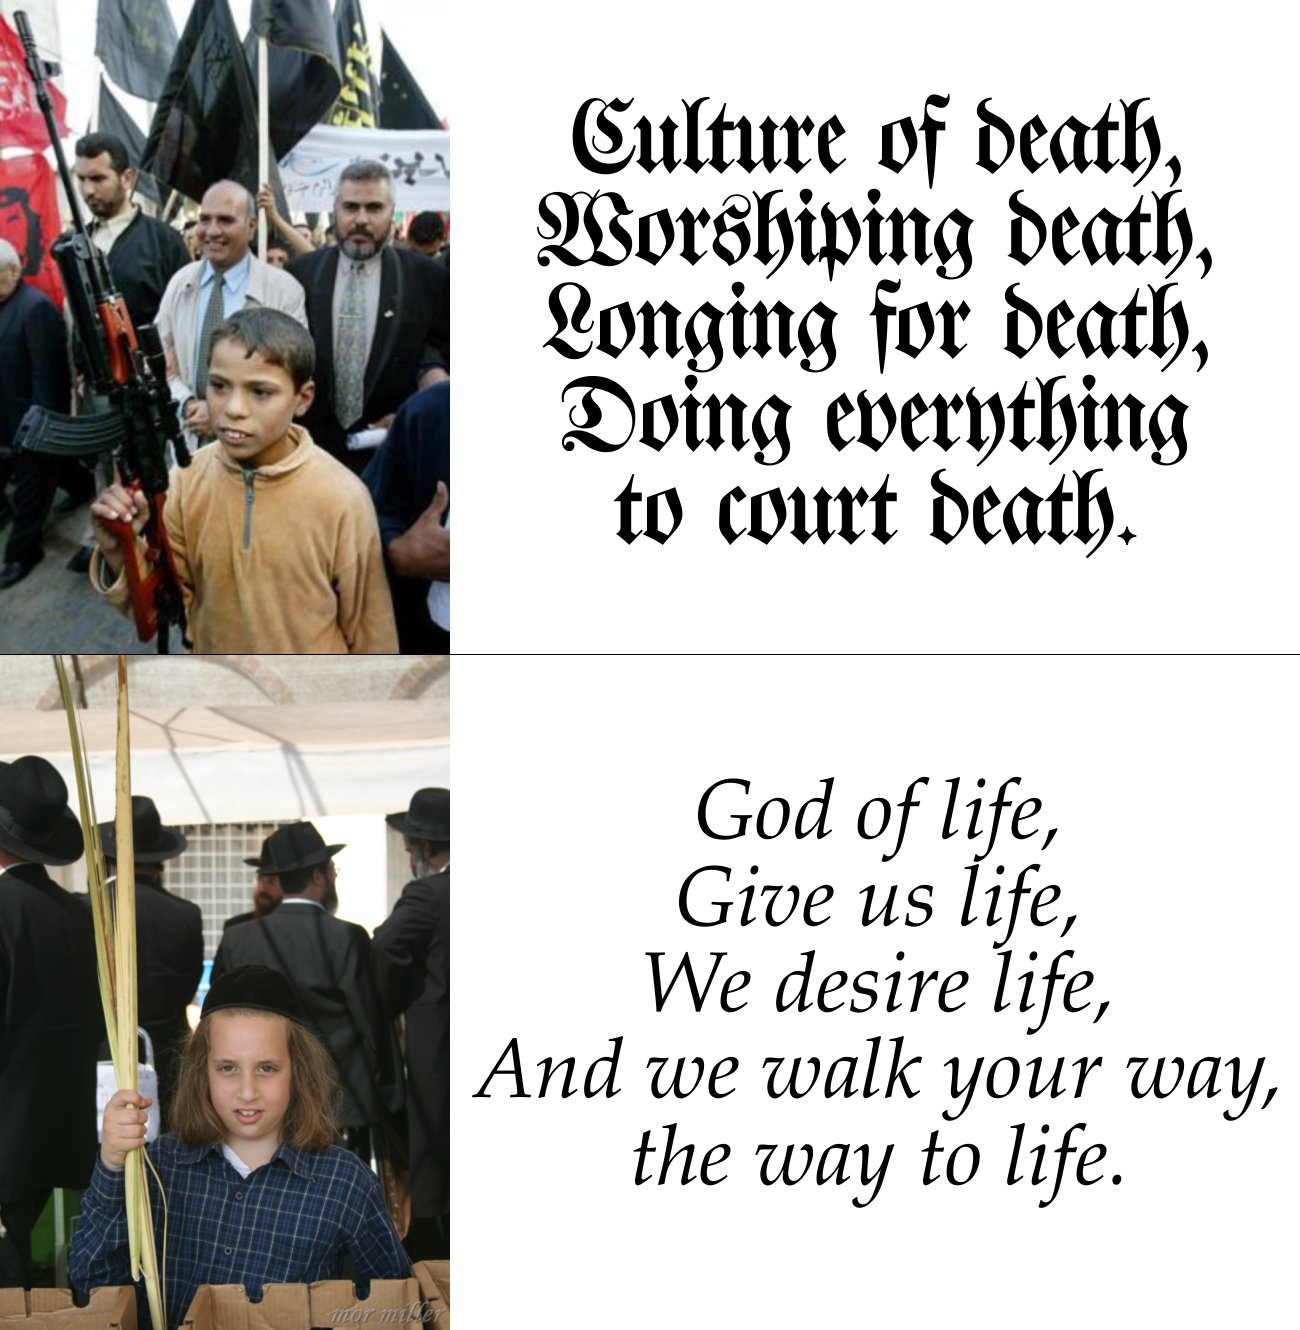 [culture-of-death-vs-god-of-life.jpg]